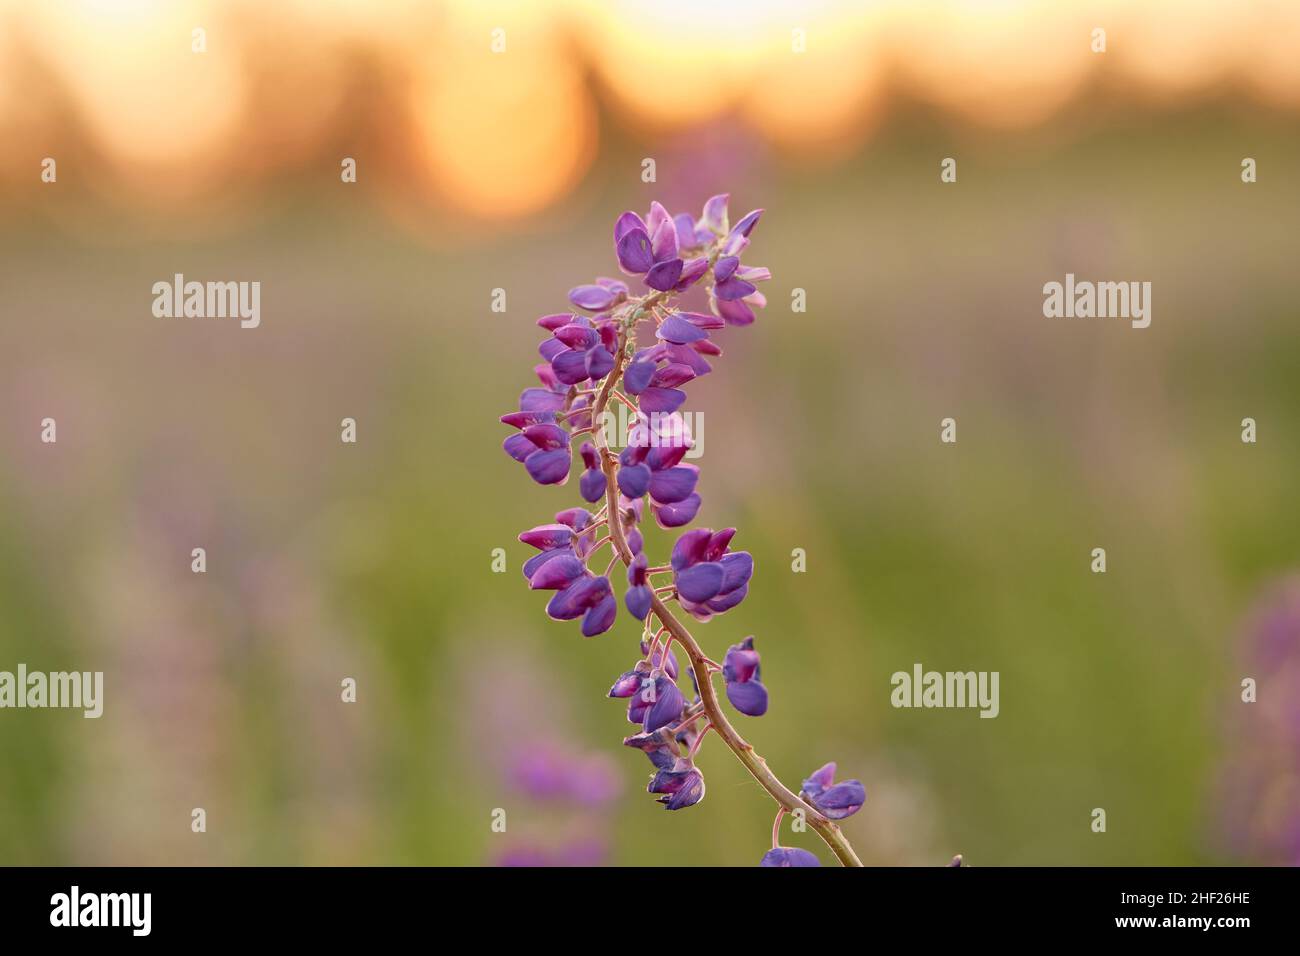 Macro photographie lupin fleur.Lupins champ violet fond naturel.Bien-être proche de la nature.Concept d'auto-découverte Banque D'Images